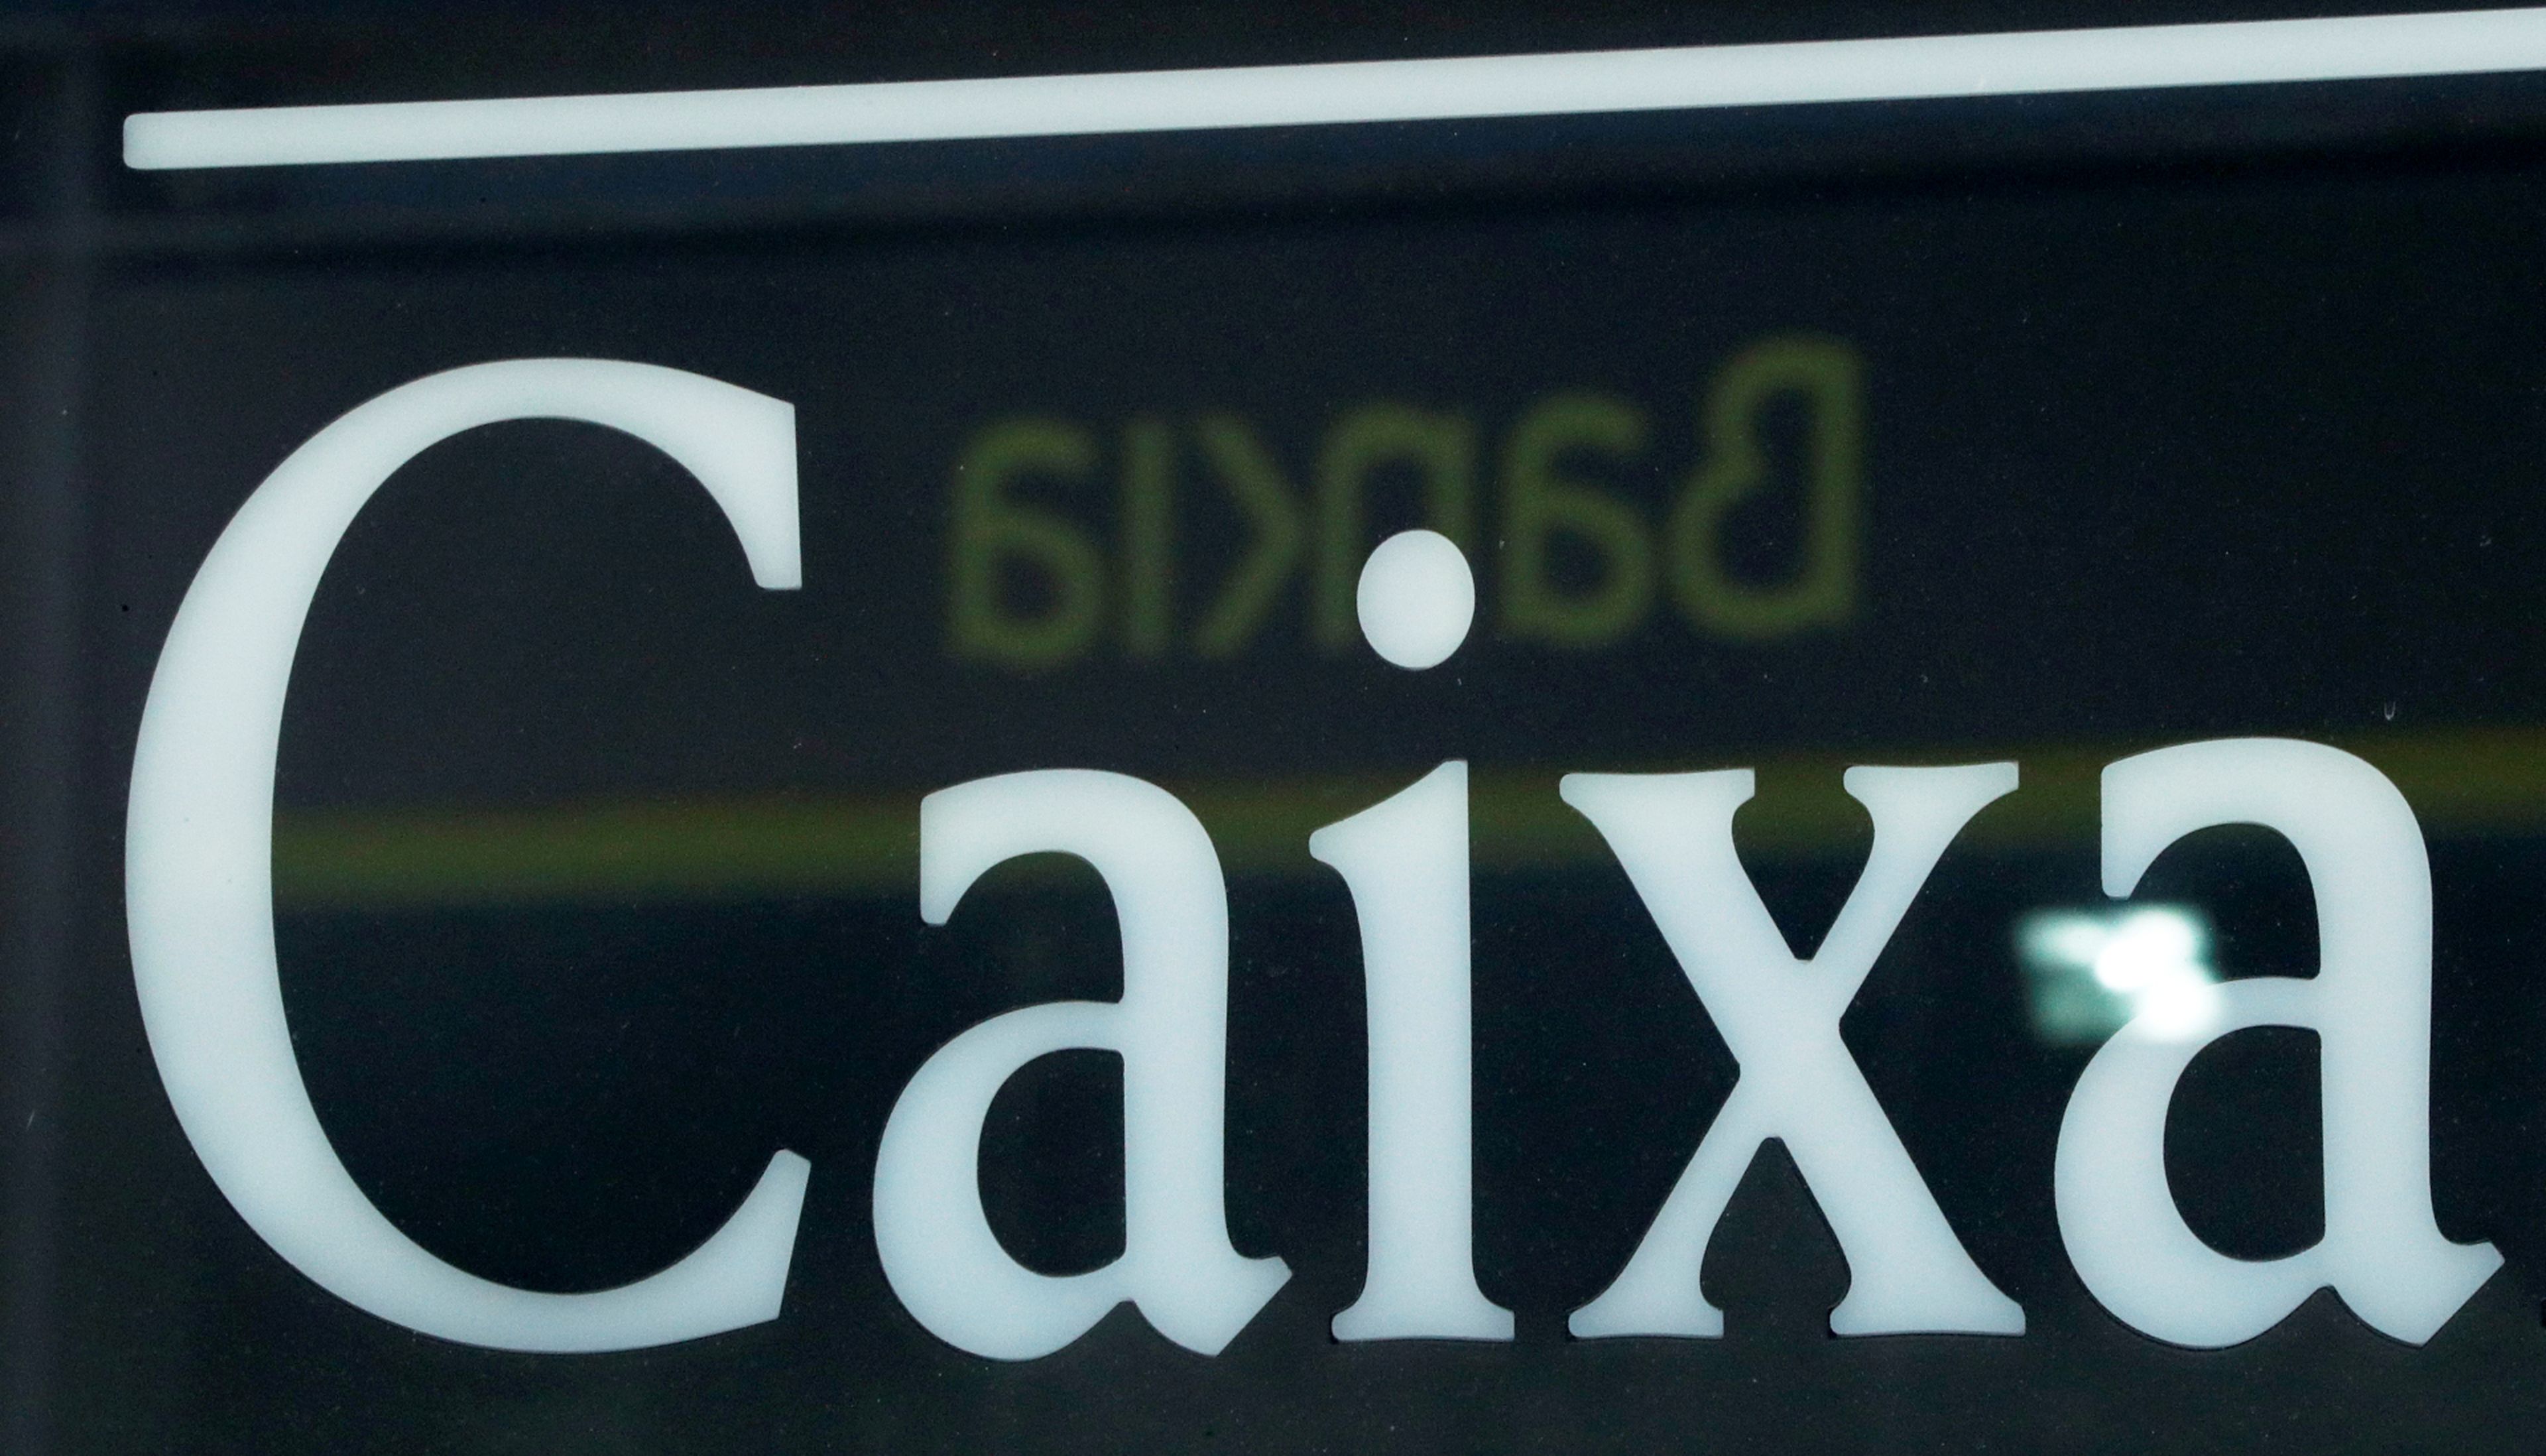 El logotipo de Bankia reflejado sobre el de CaixaBank